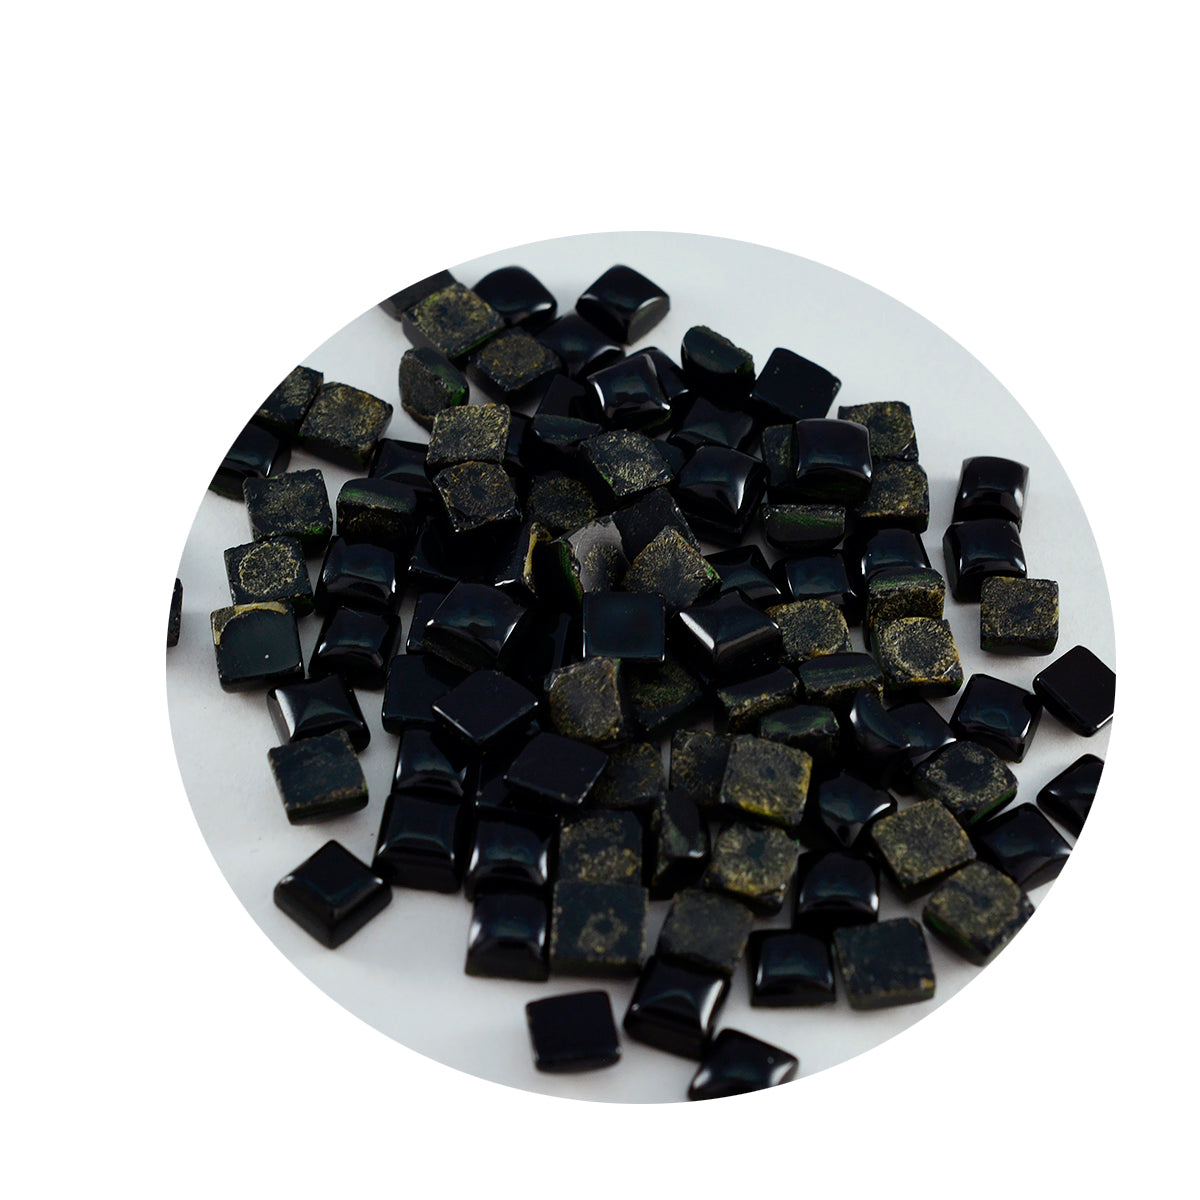 Riyogems 1PC Black Onyx Cabochon 4x4 mm Square Shape pretty Quality Gems